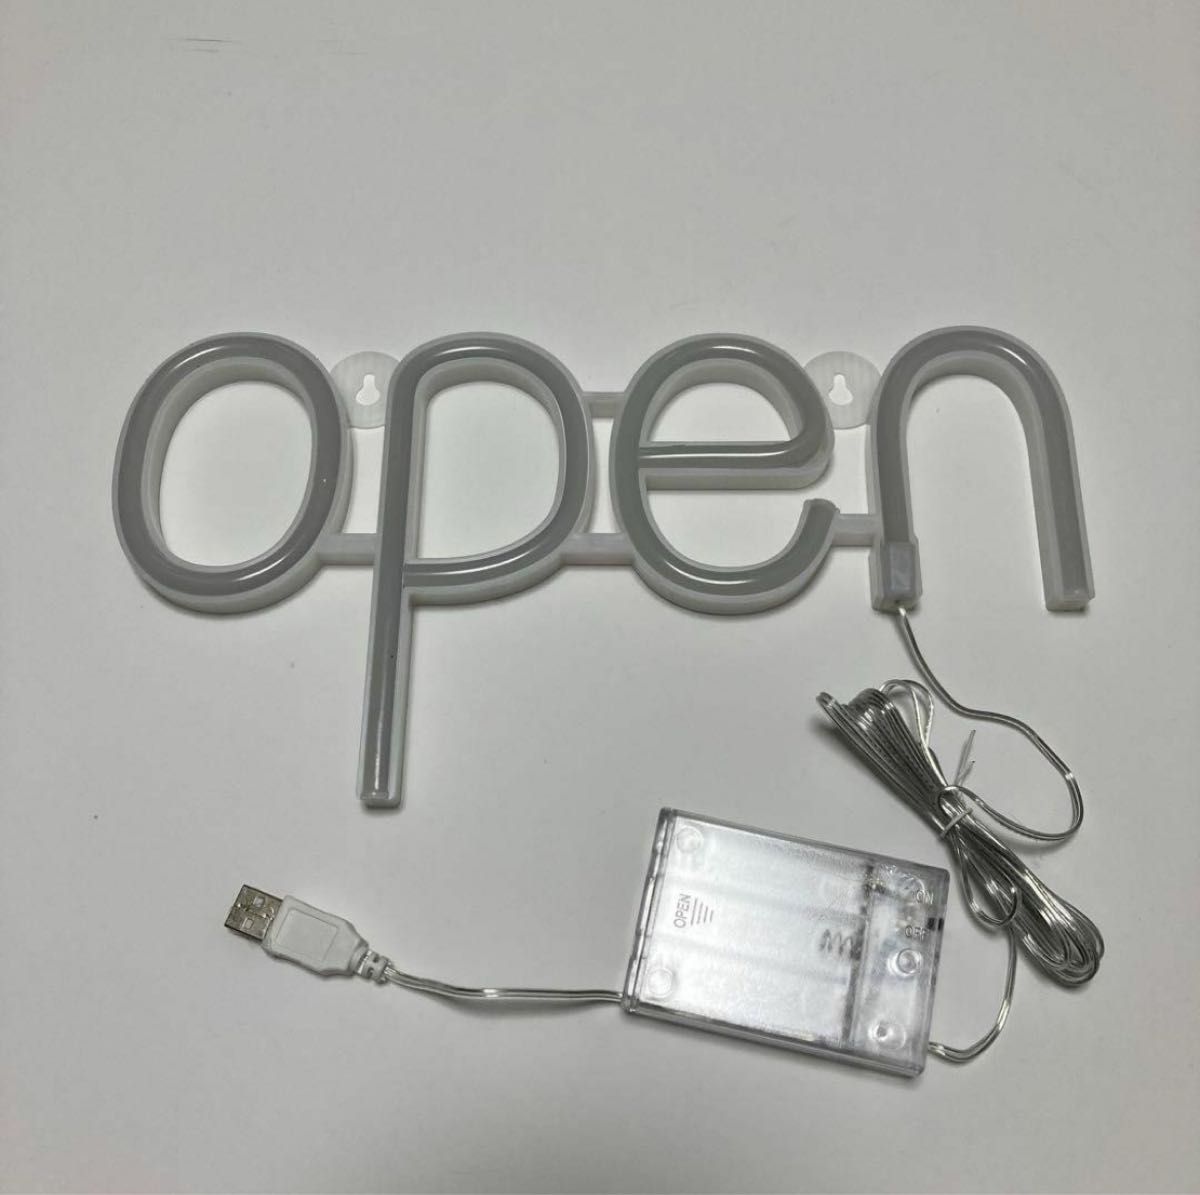 ネオンライト　LED オープン　OPEN　開店　飾り　看板　インスタ映え　 バー ネオン管